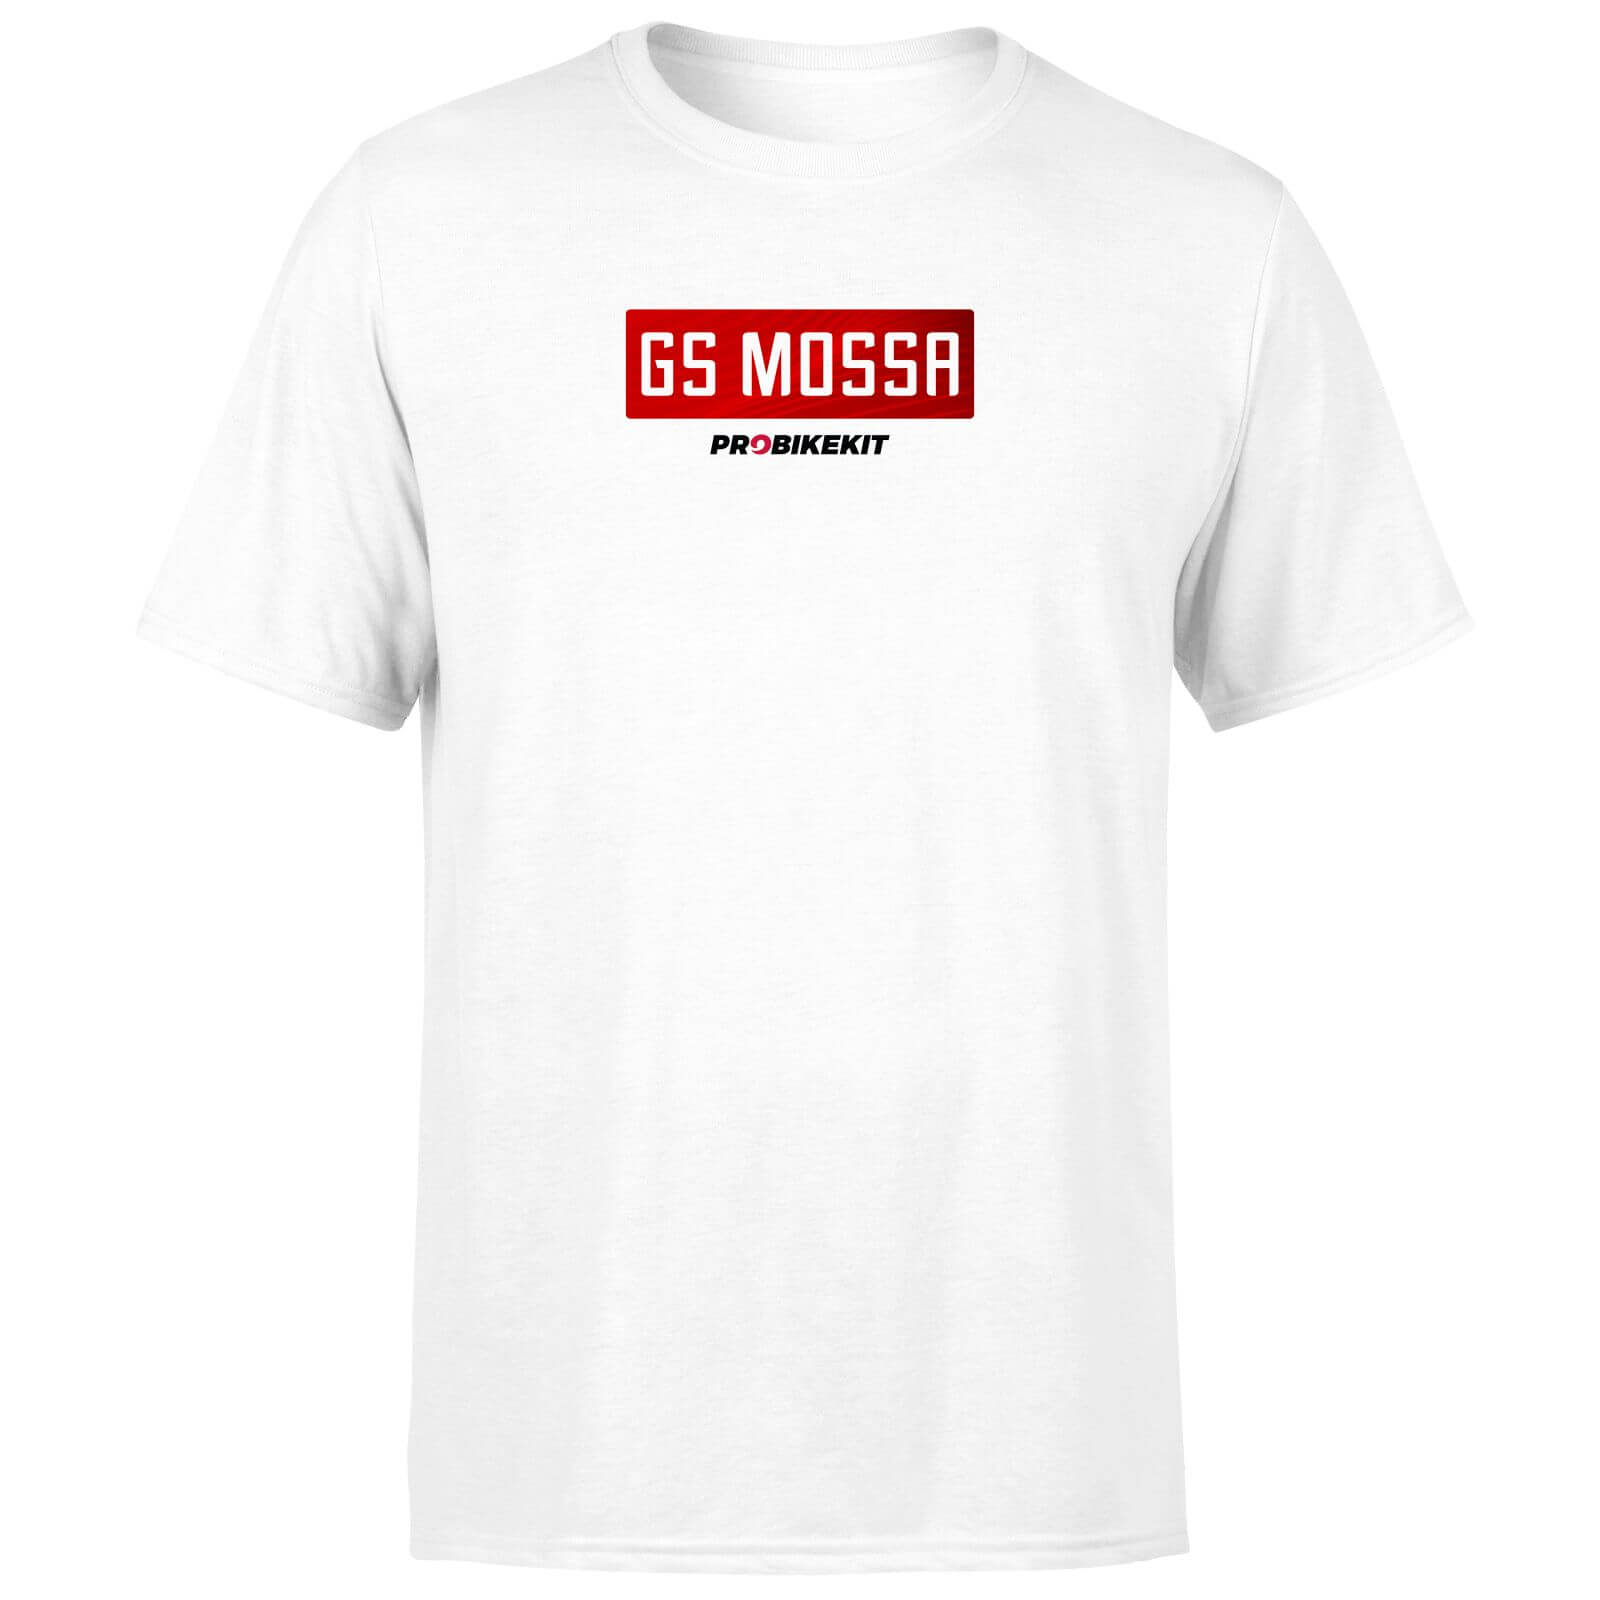 PBK GS Mossa Boxed Chest Logo Men's T-Shirt - White - M - White